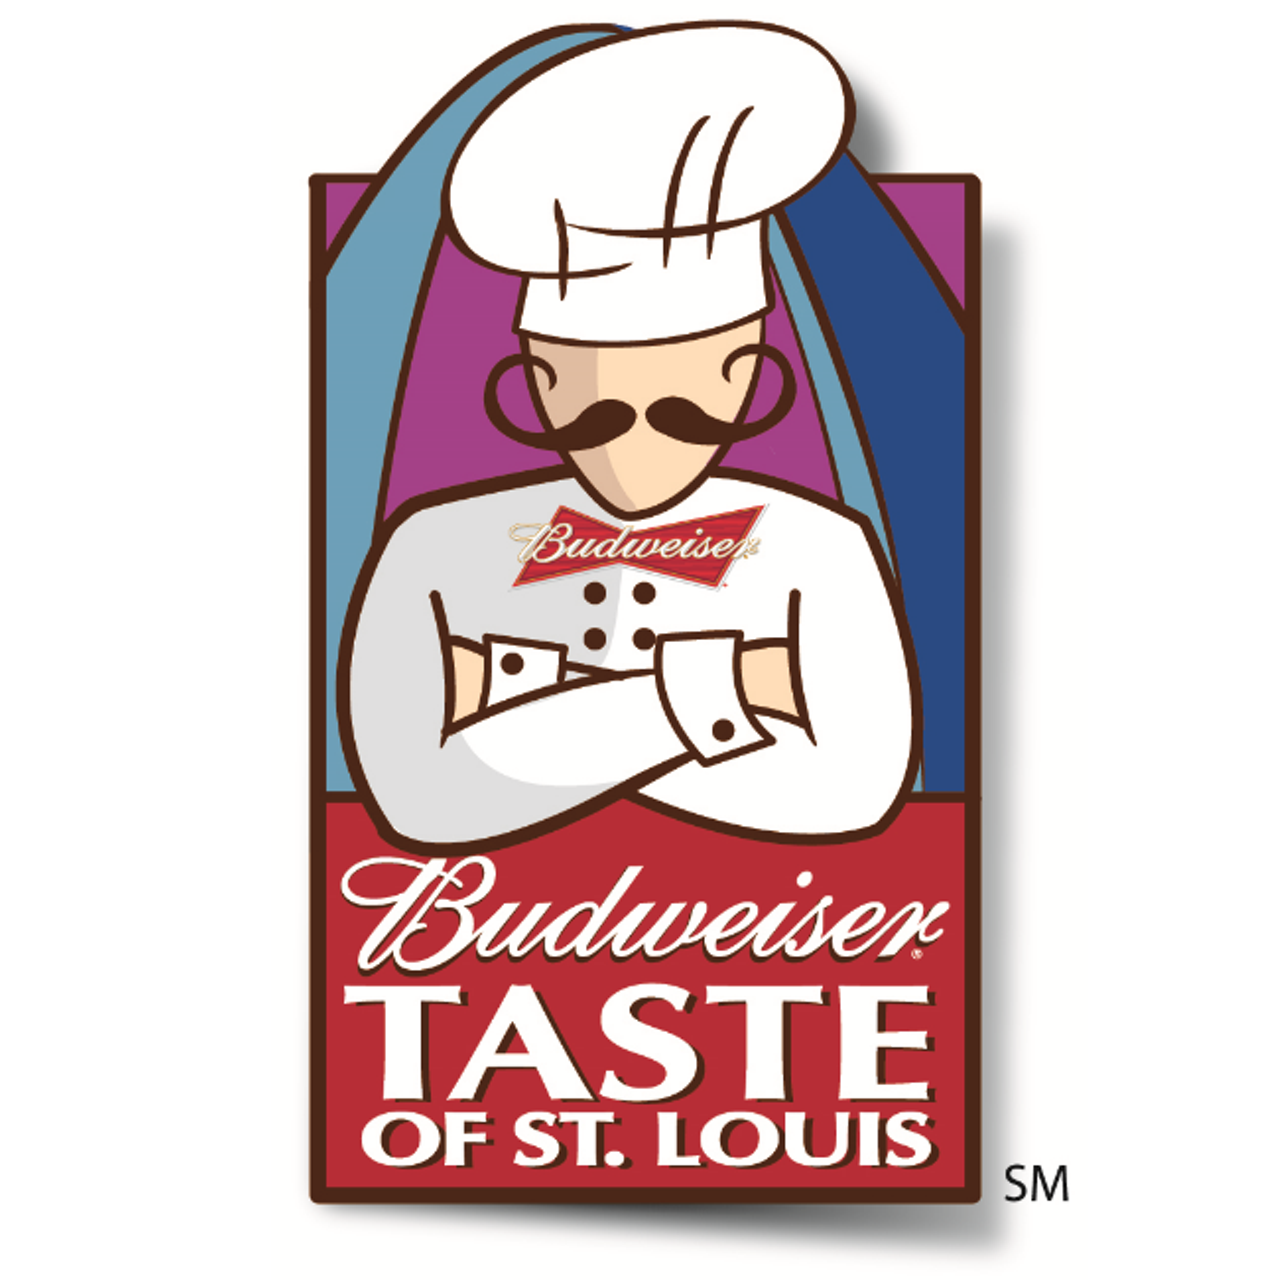 Taste of St. Louis